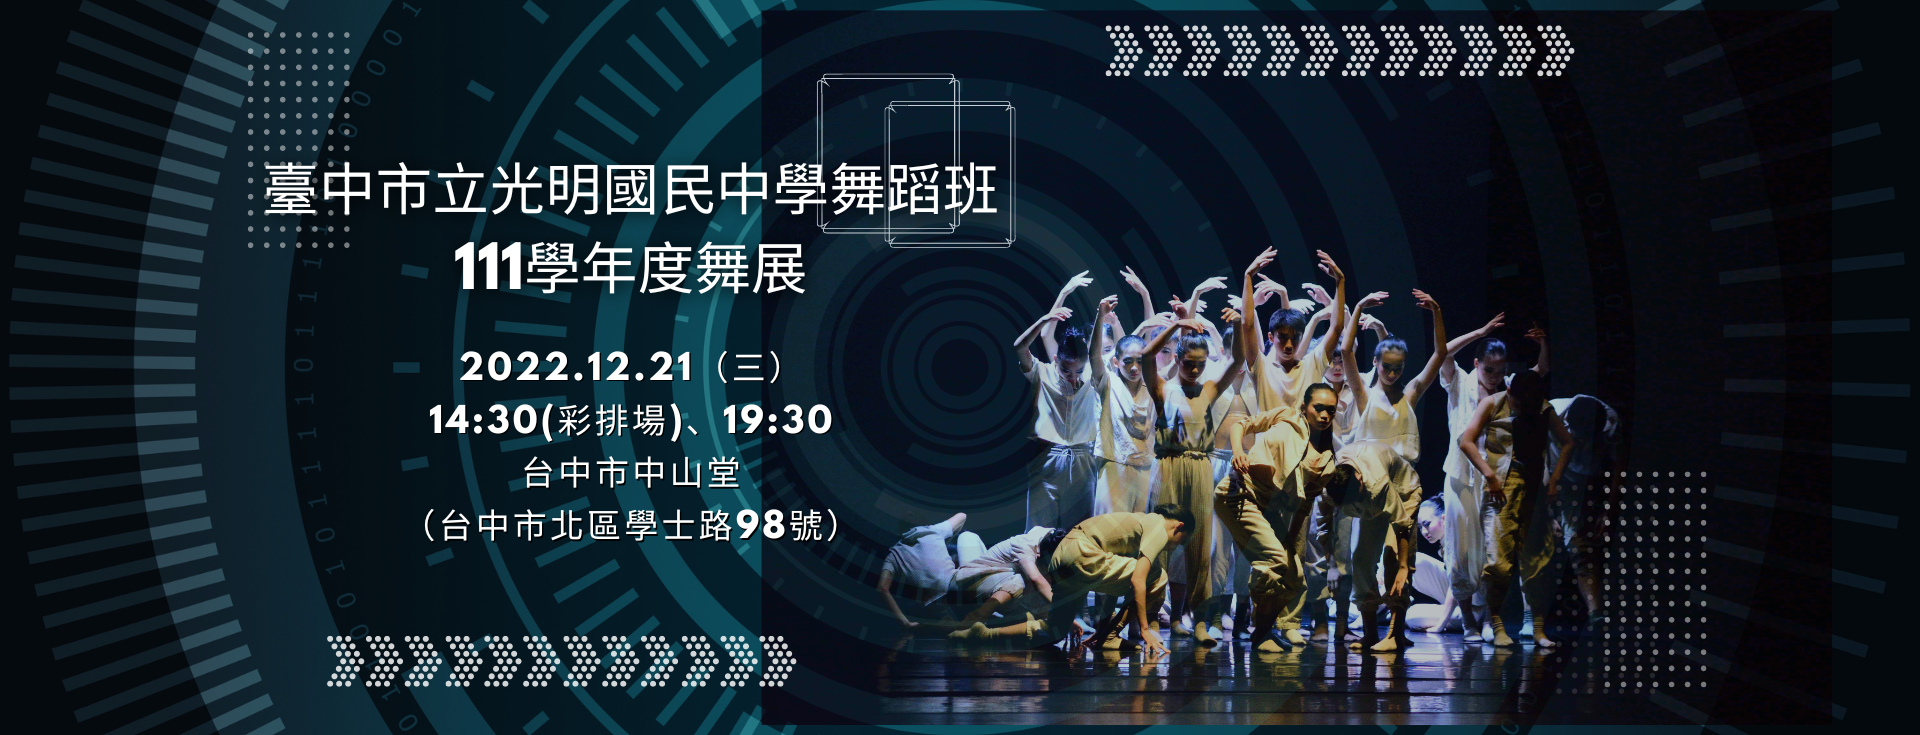 臺中市立光明國民中學舞蹈班111學年度舞展